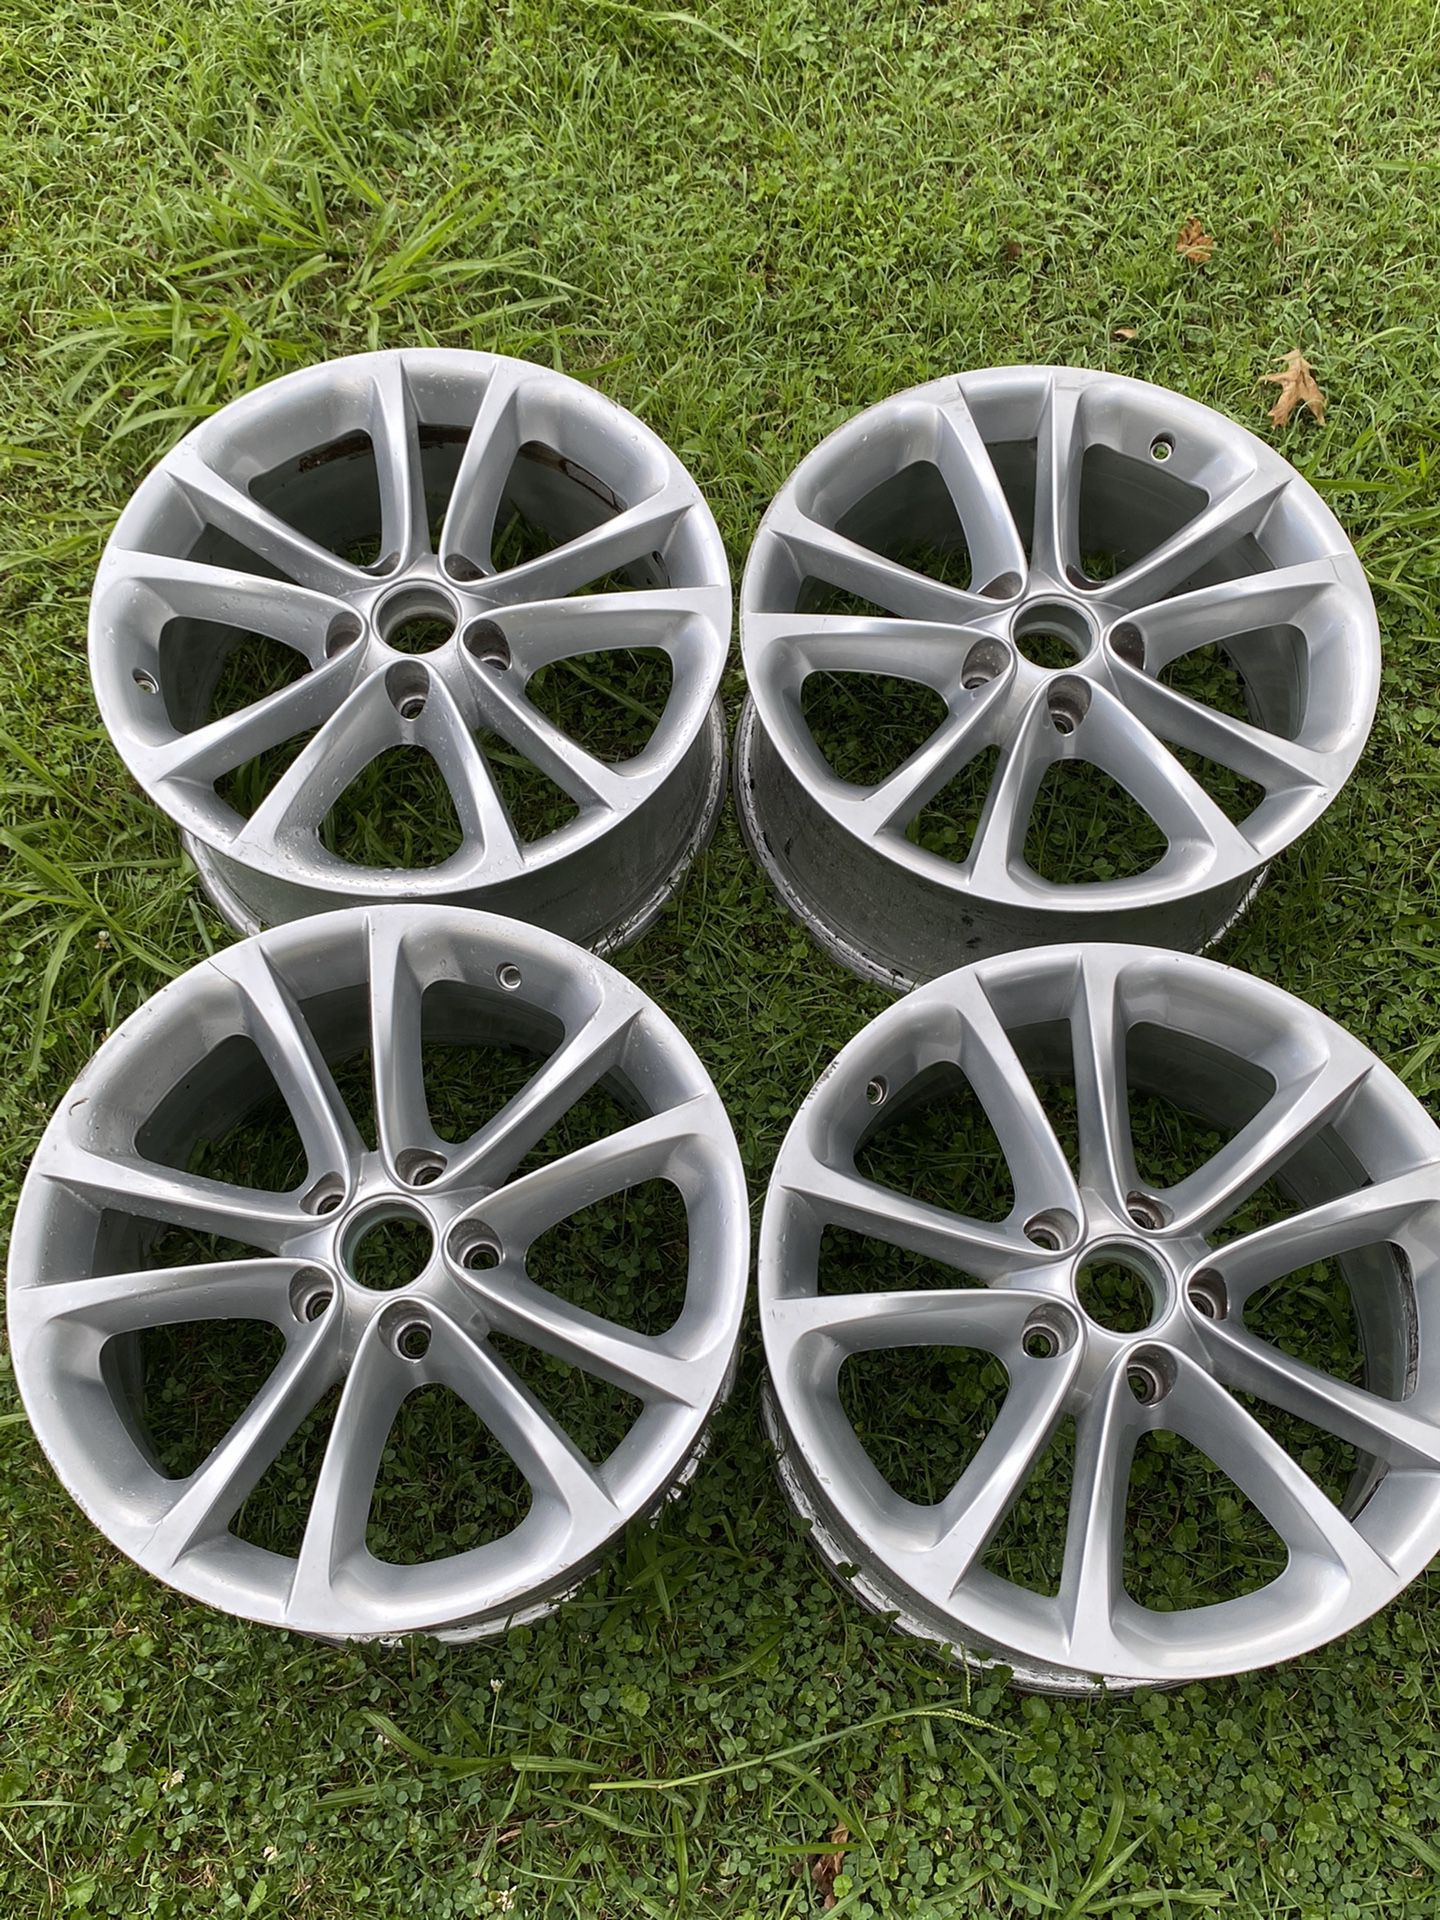 Volkswagen Wheels/Rim 17”